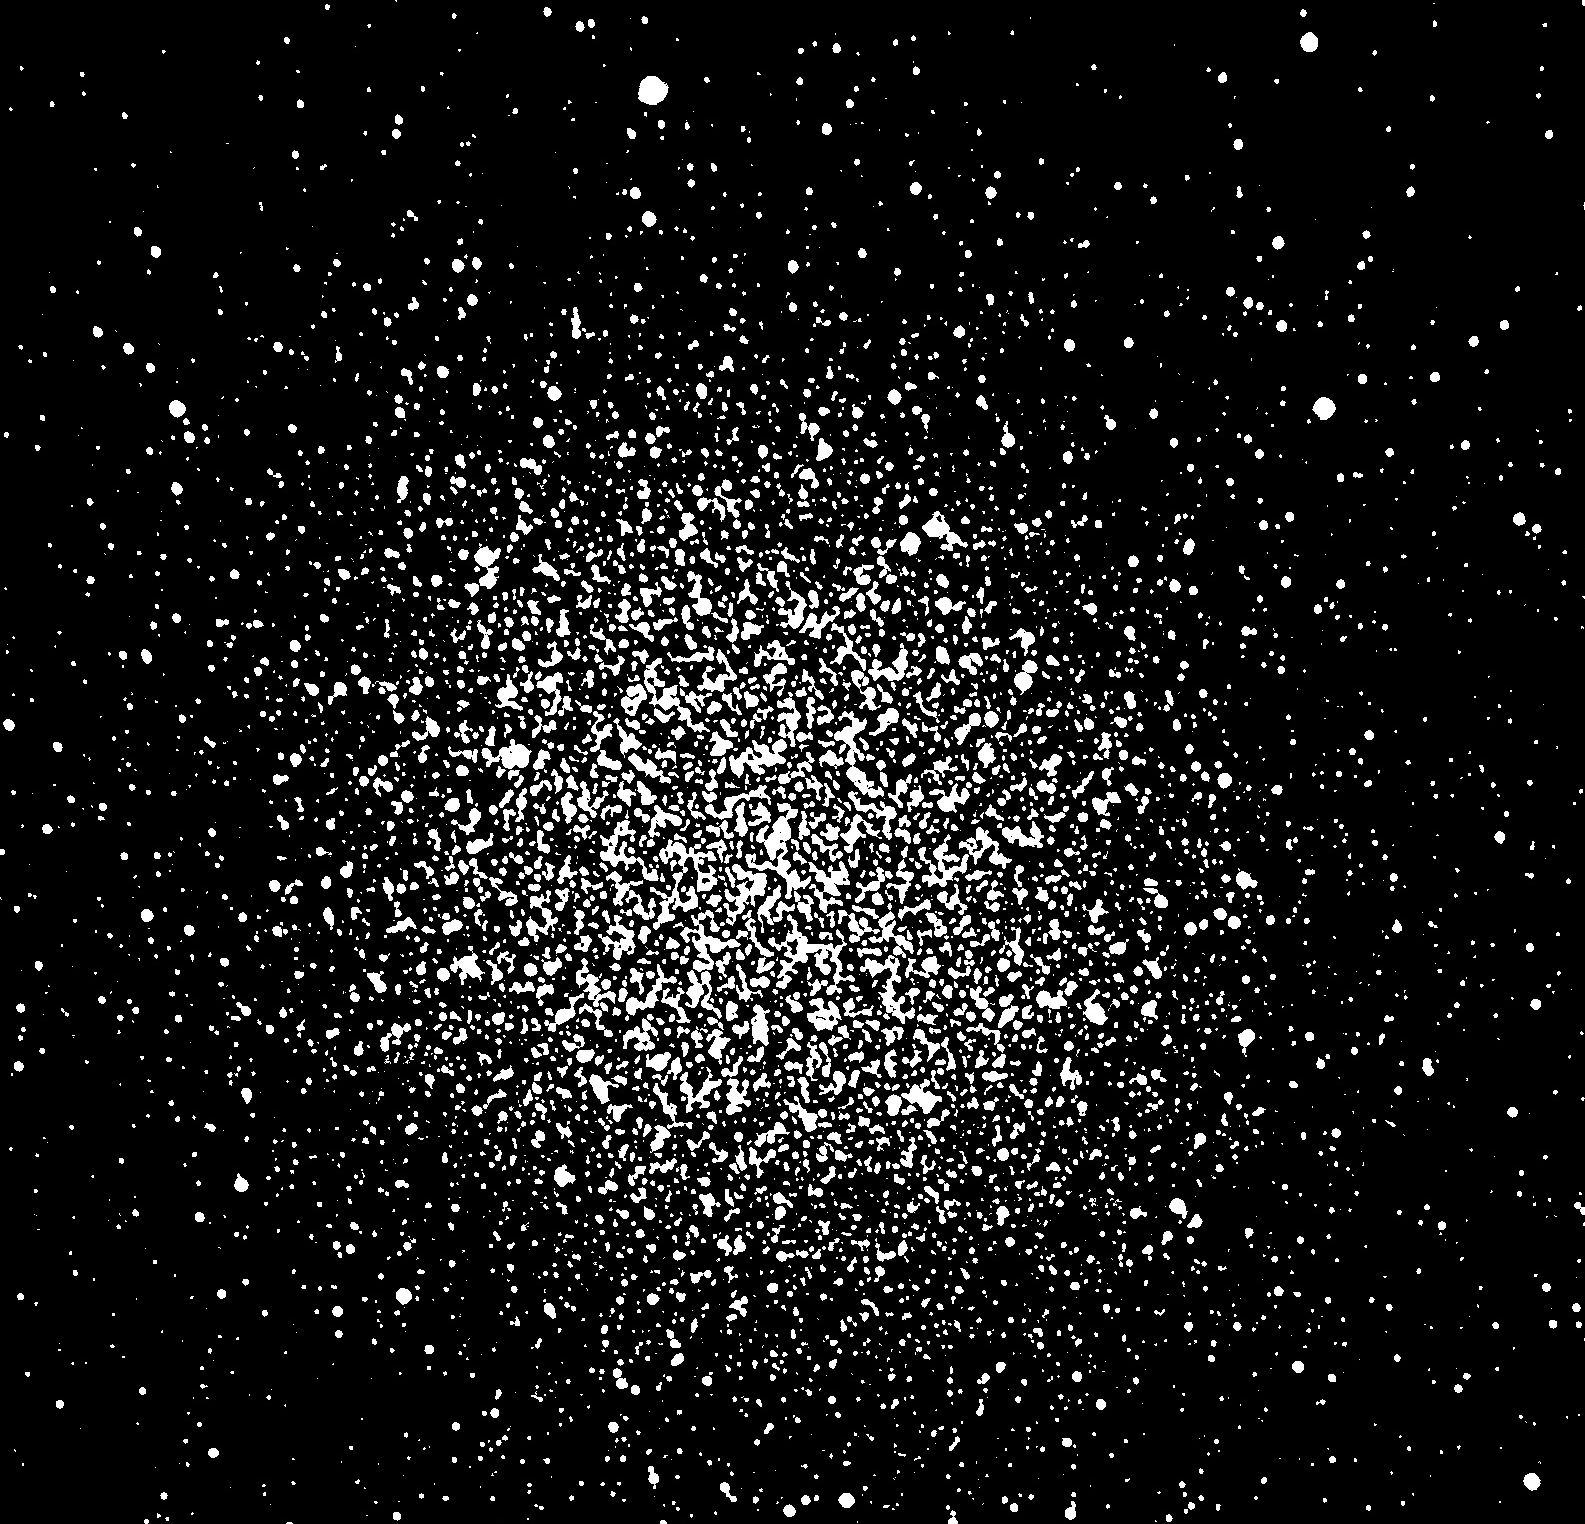 Globular Star Cluster M13